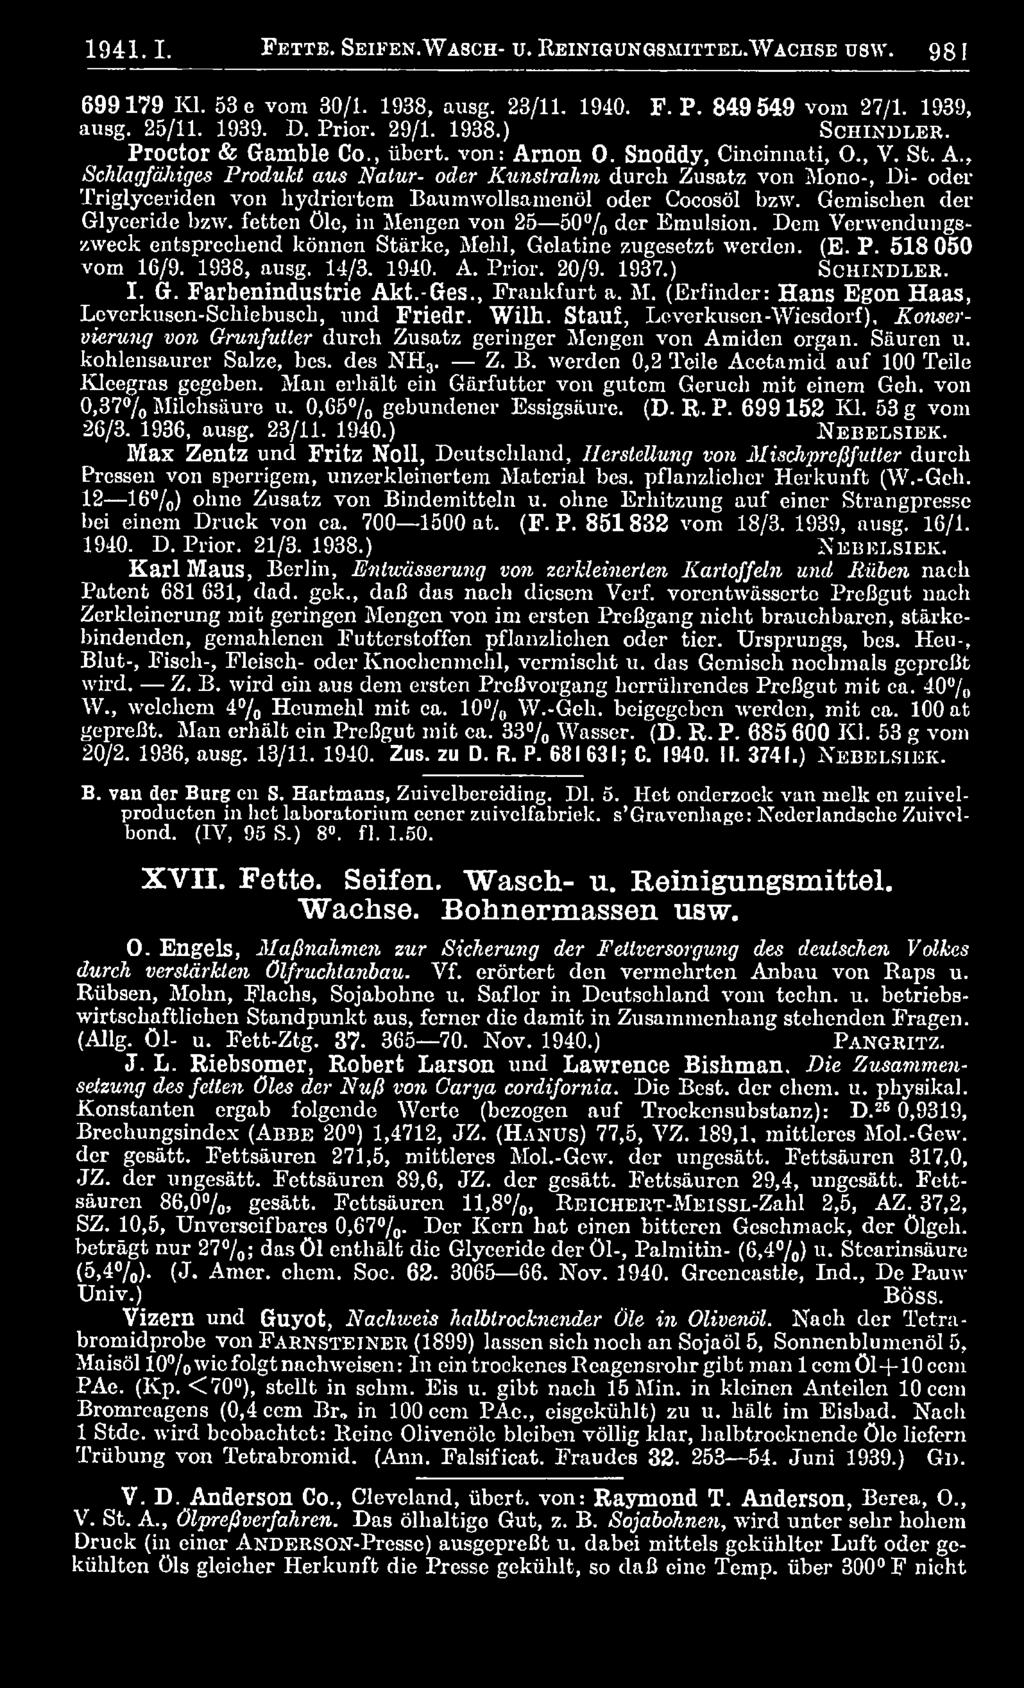 1940. A. Prior. 20/9. 1937.) S c h in d l e r. I. G. Farbenindustrie Akt.-Ges., Frankfurt a. M. (Erfinder: Hans Egon Haas, Leverkusen-Schlebusch, und Friedr. Wilh.